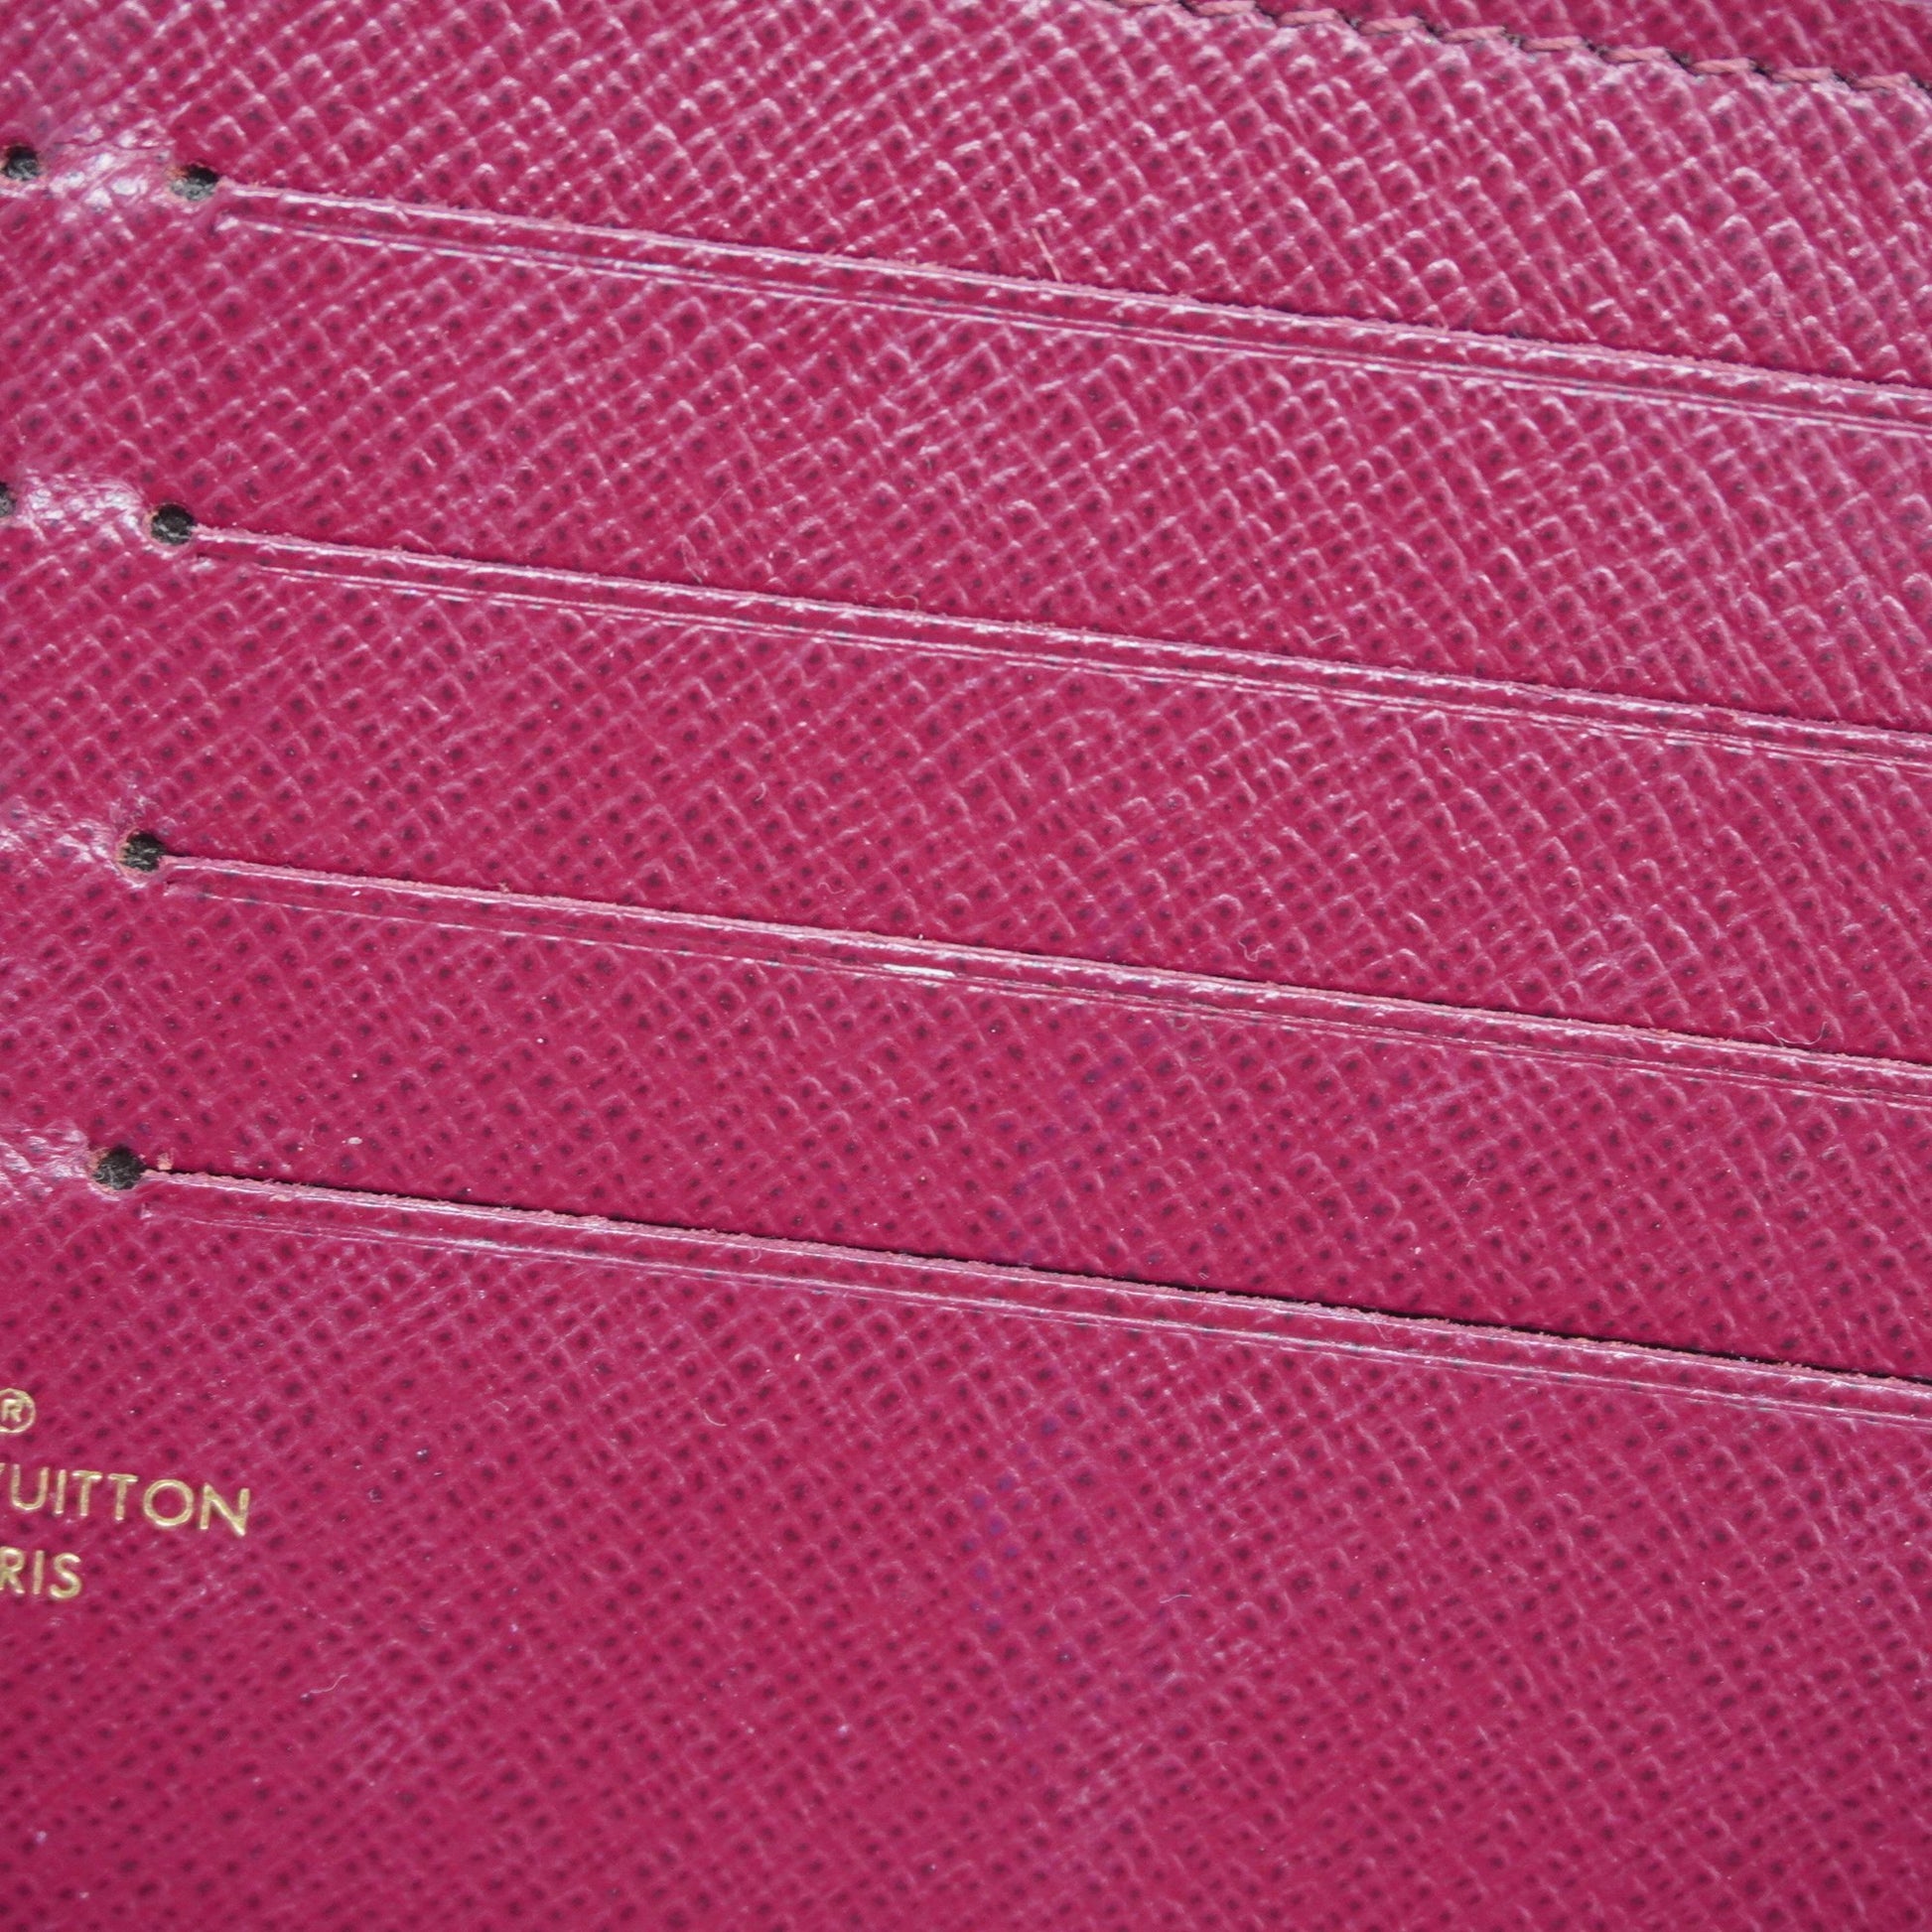 Louis Vuitton MONOGRAM Félicie pochette (M61276)